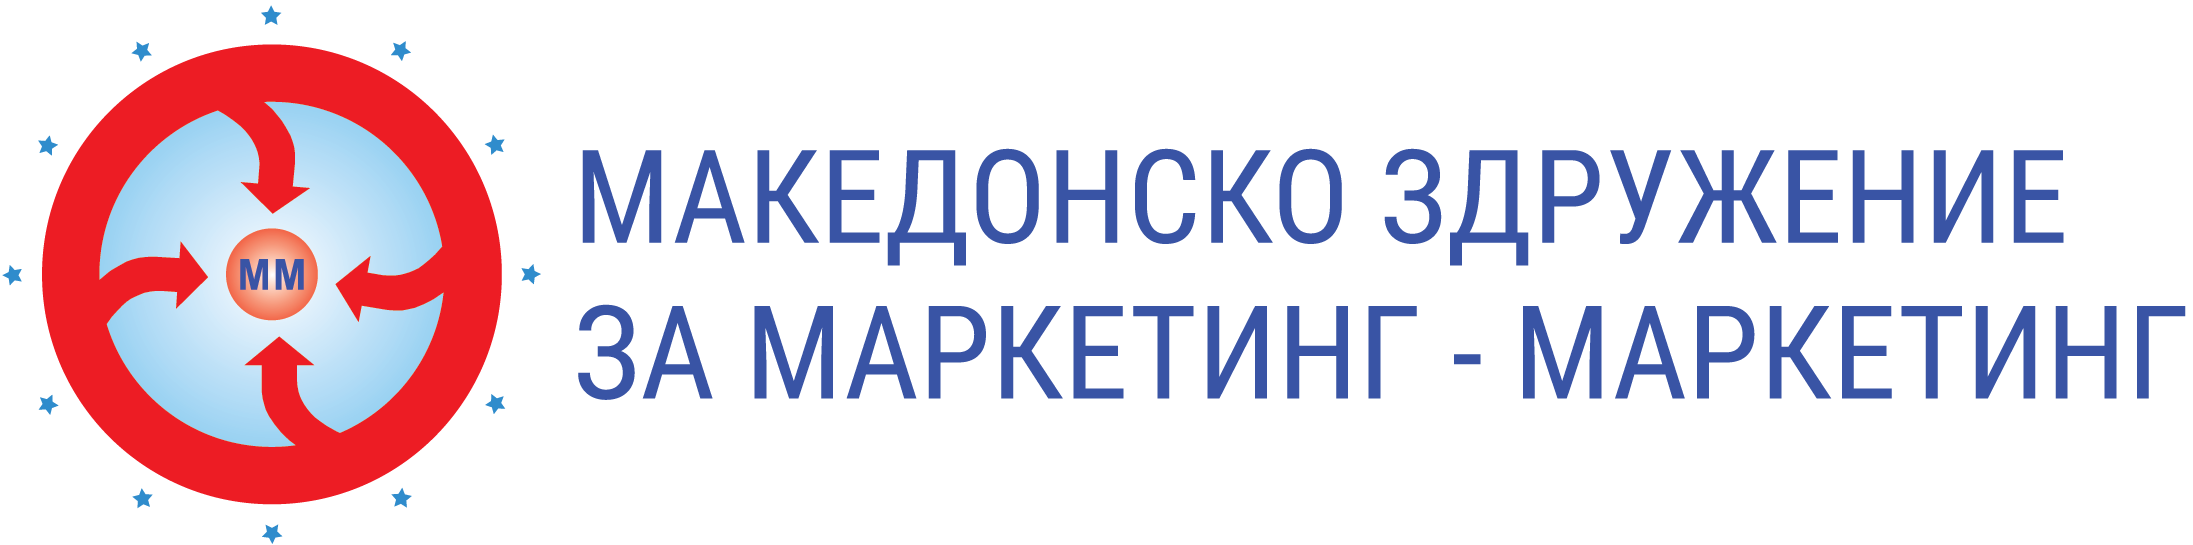 Logo so tekst